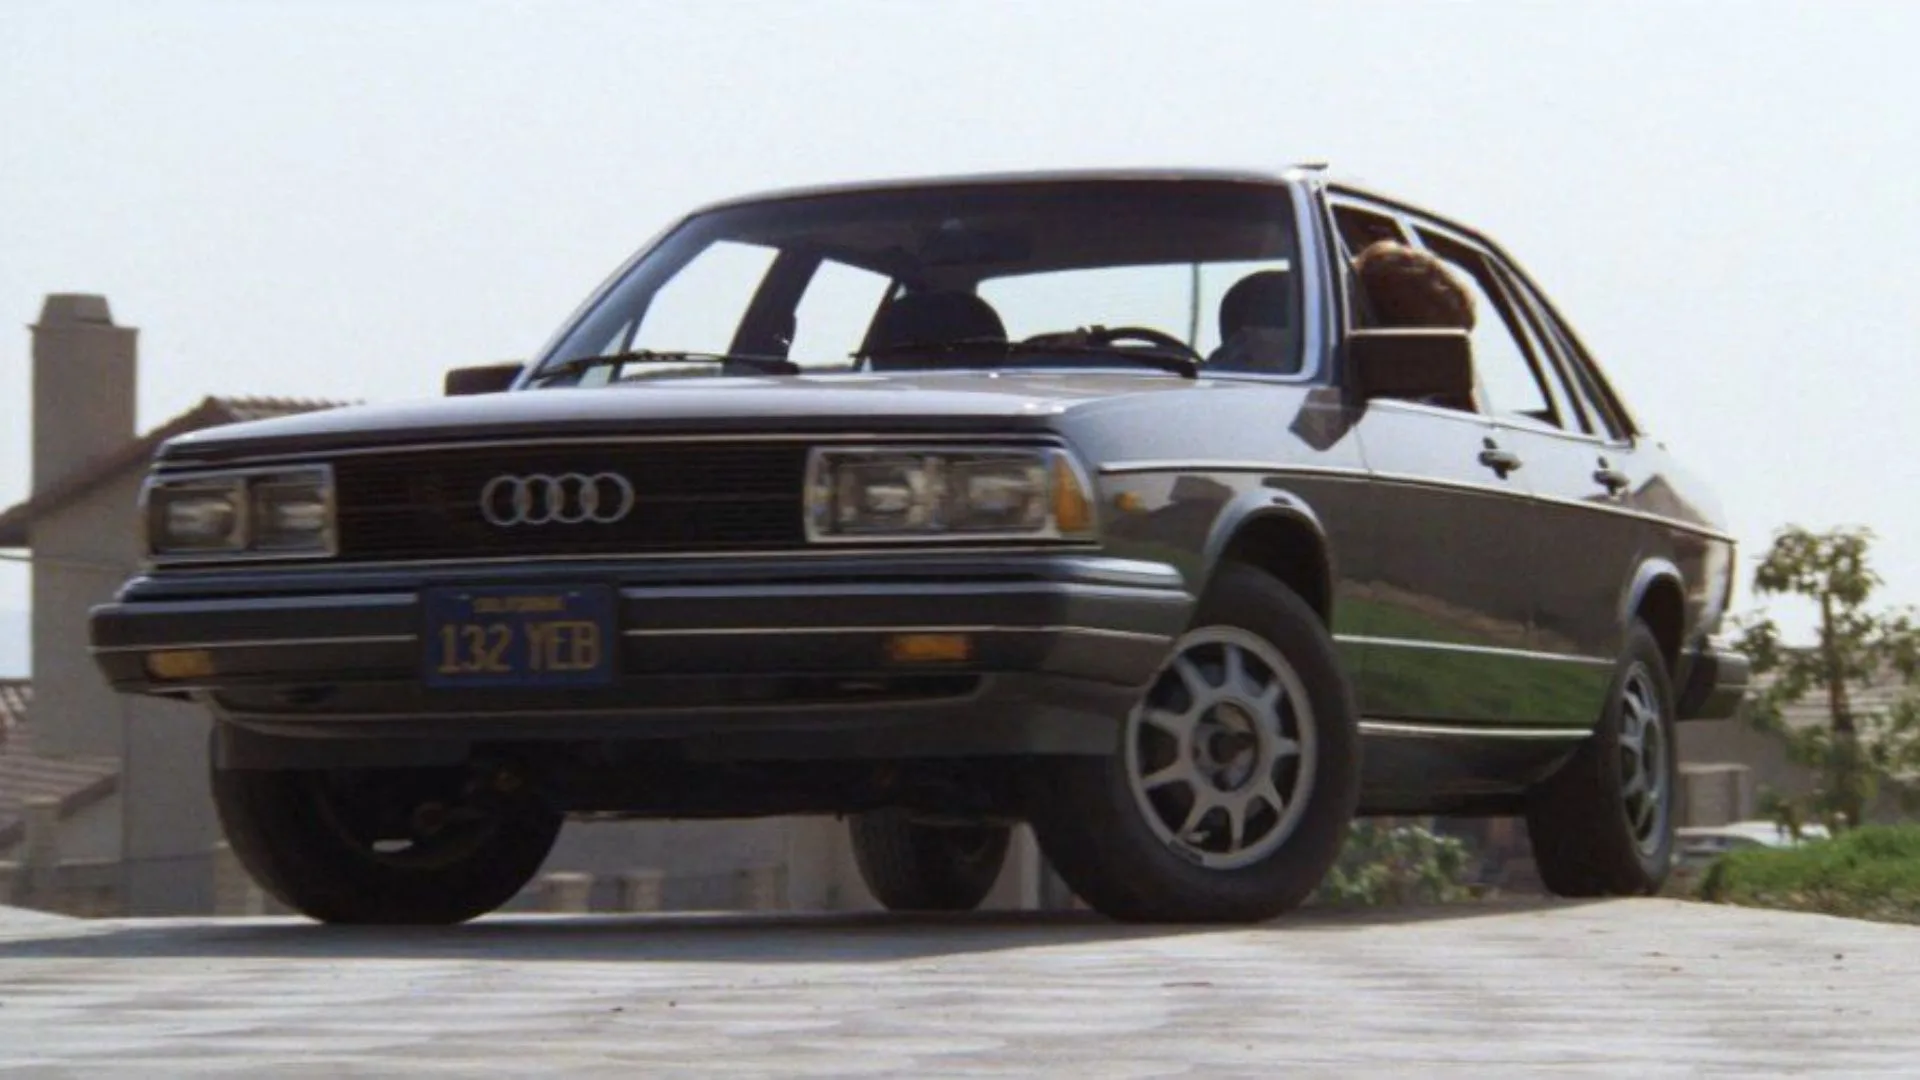 E.T fue la primera película en donde se incluyó un auto Audi con el modelo Audi 5000